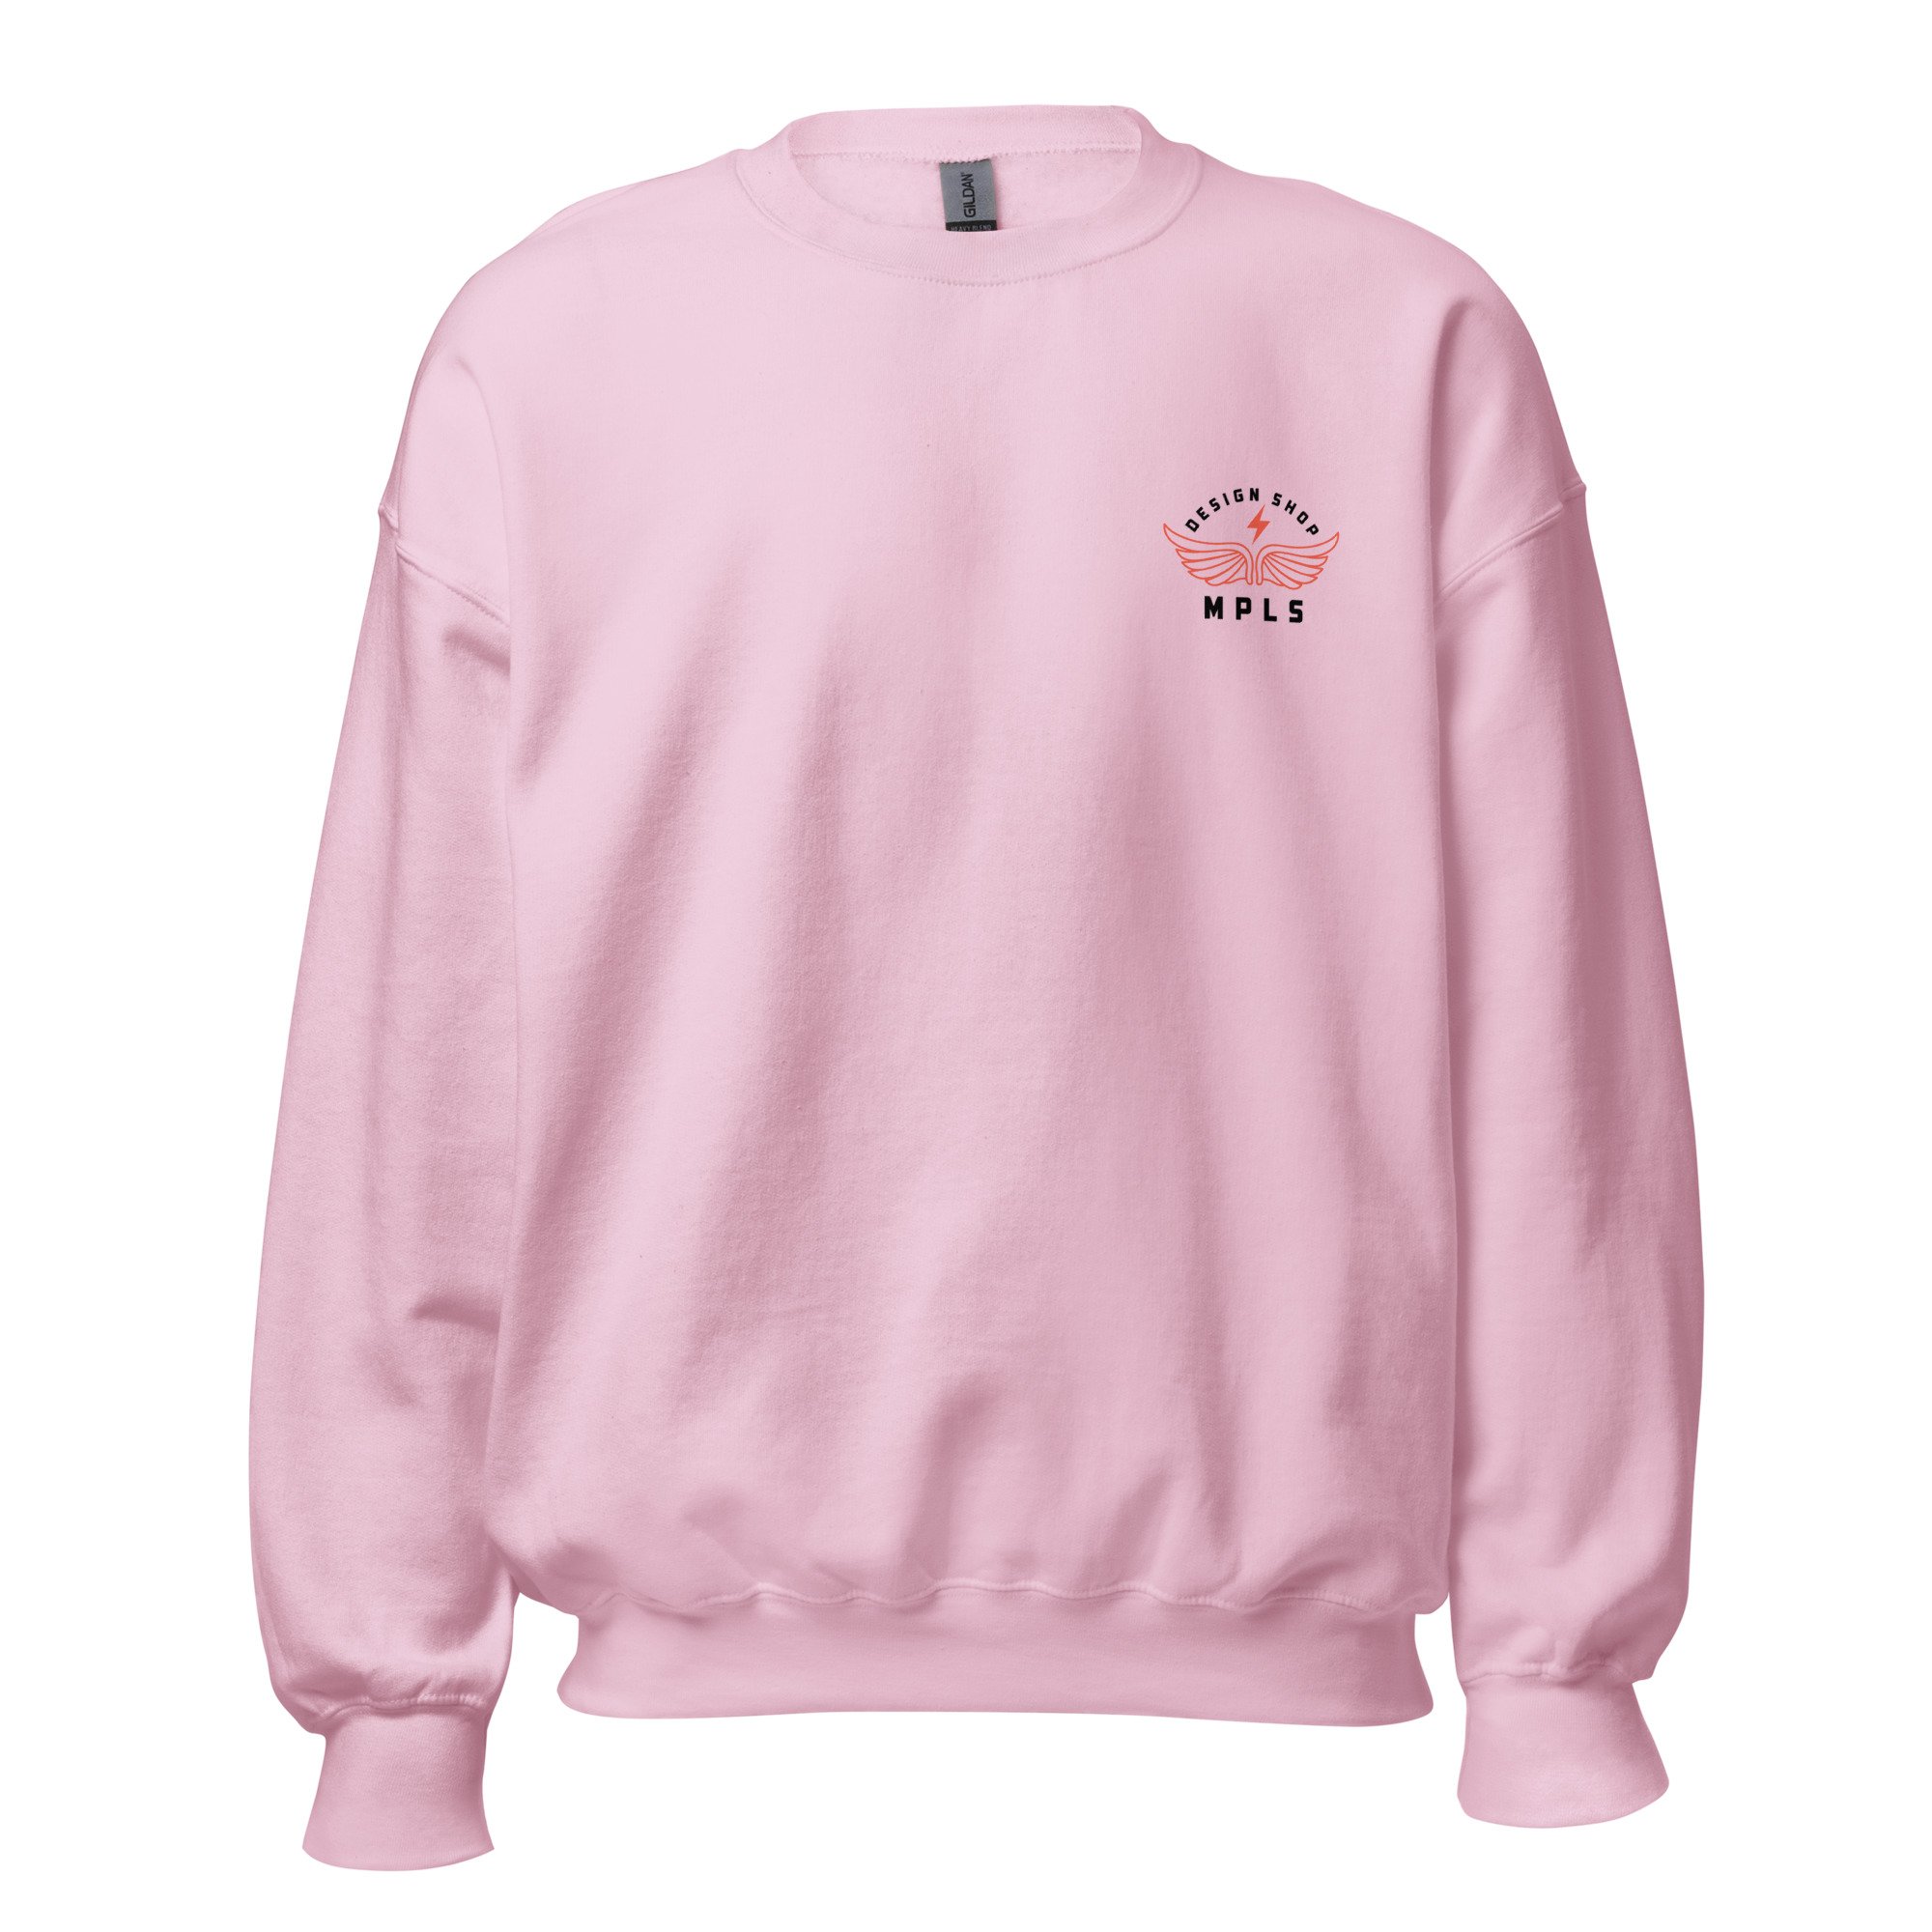 unisex-crew-neck-sweatshirt-light-pink-front-64c3e1a5d5871.jpg